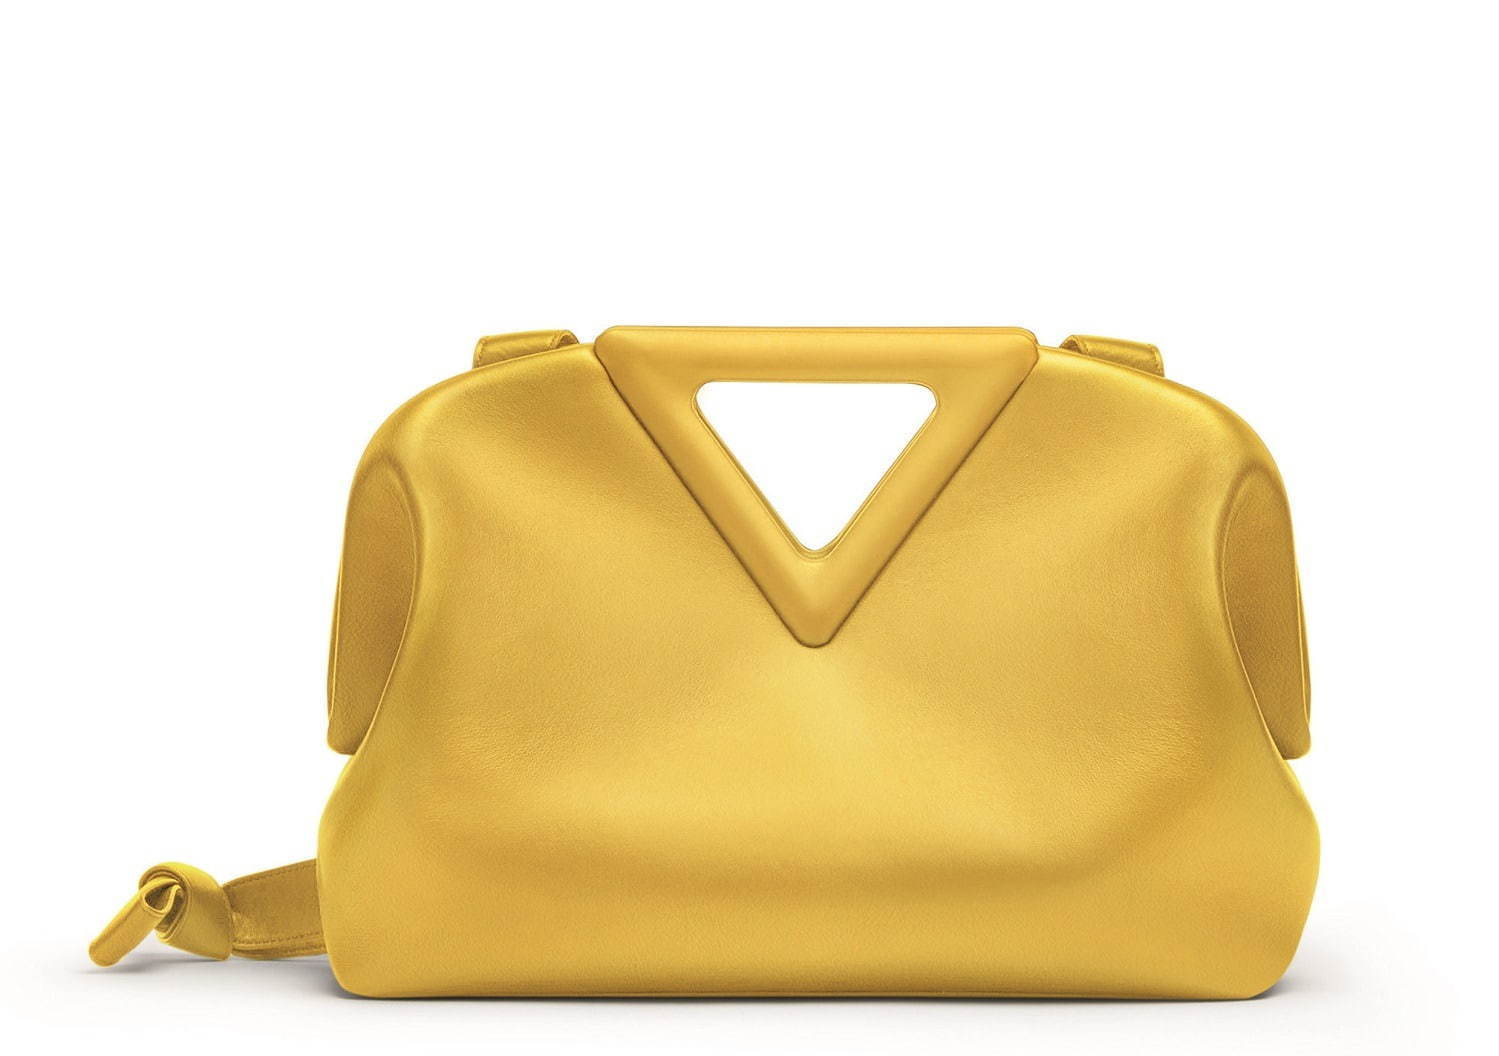 ボッテガ・ヴェネタの新作バッグ「ザ・トライアングル」“三角形